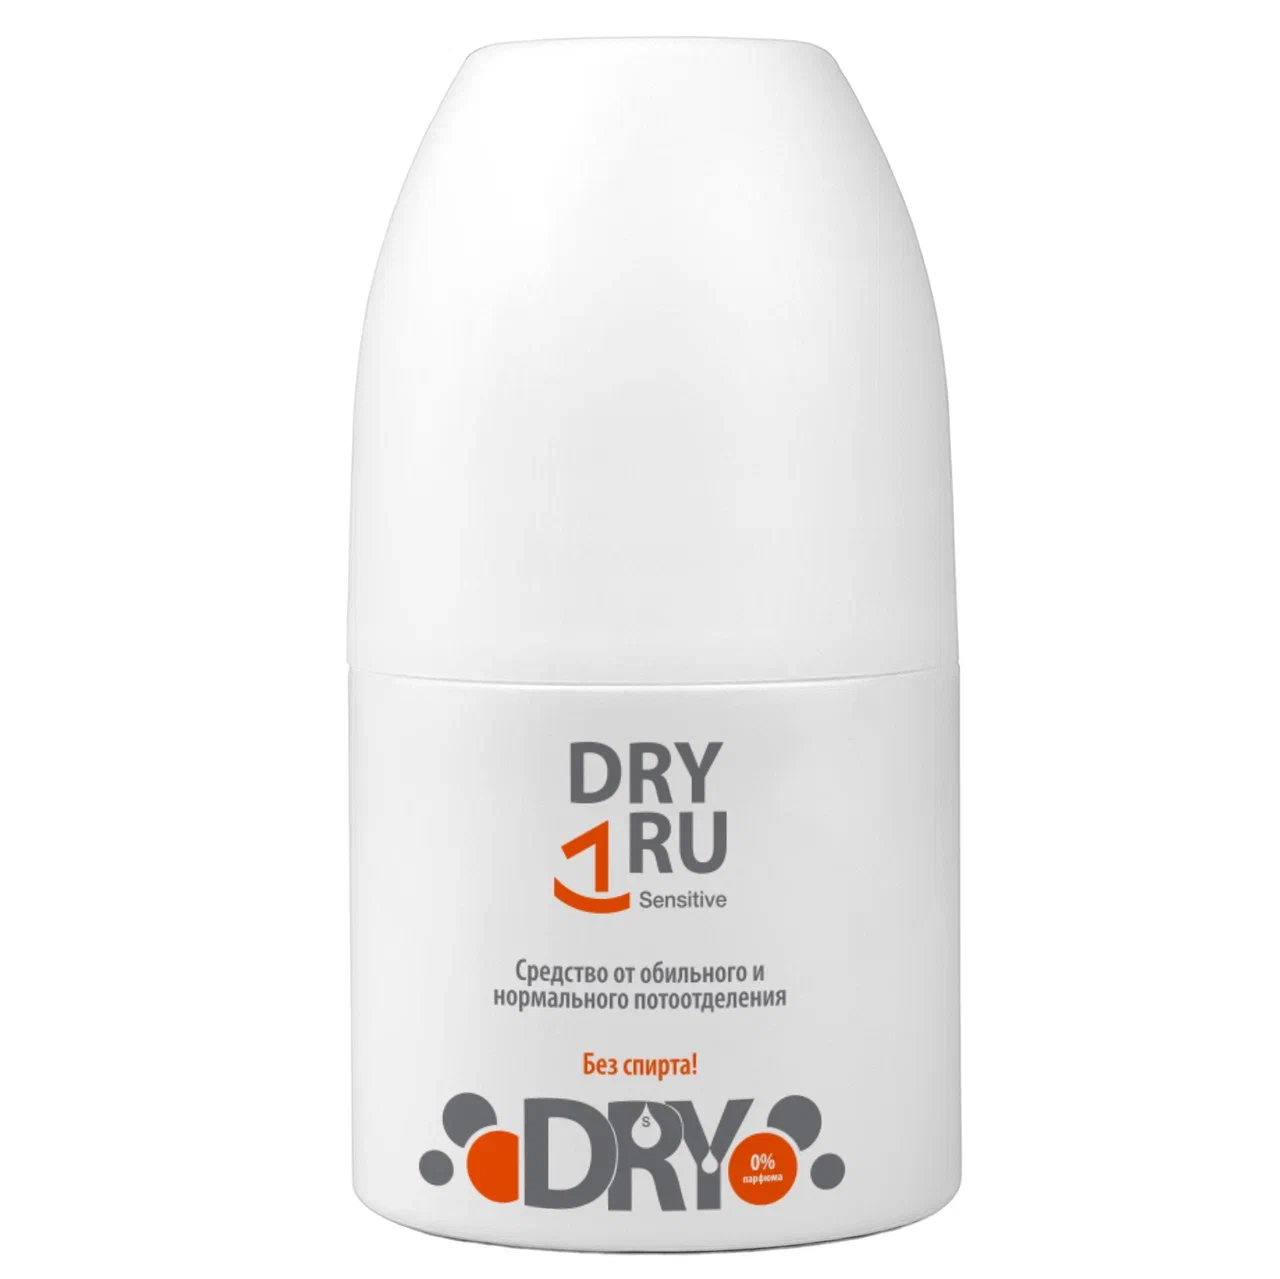 Дезодорант-антиперспирант DRY RU Sensitive шариковый, от пота и запаха 50 мл дезодорант антиперспирант dry ru roll шариковый от пота и запаха 50 мл